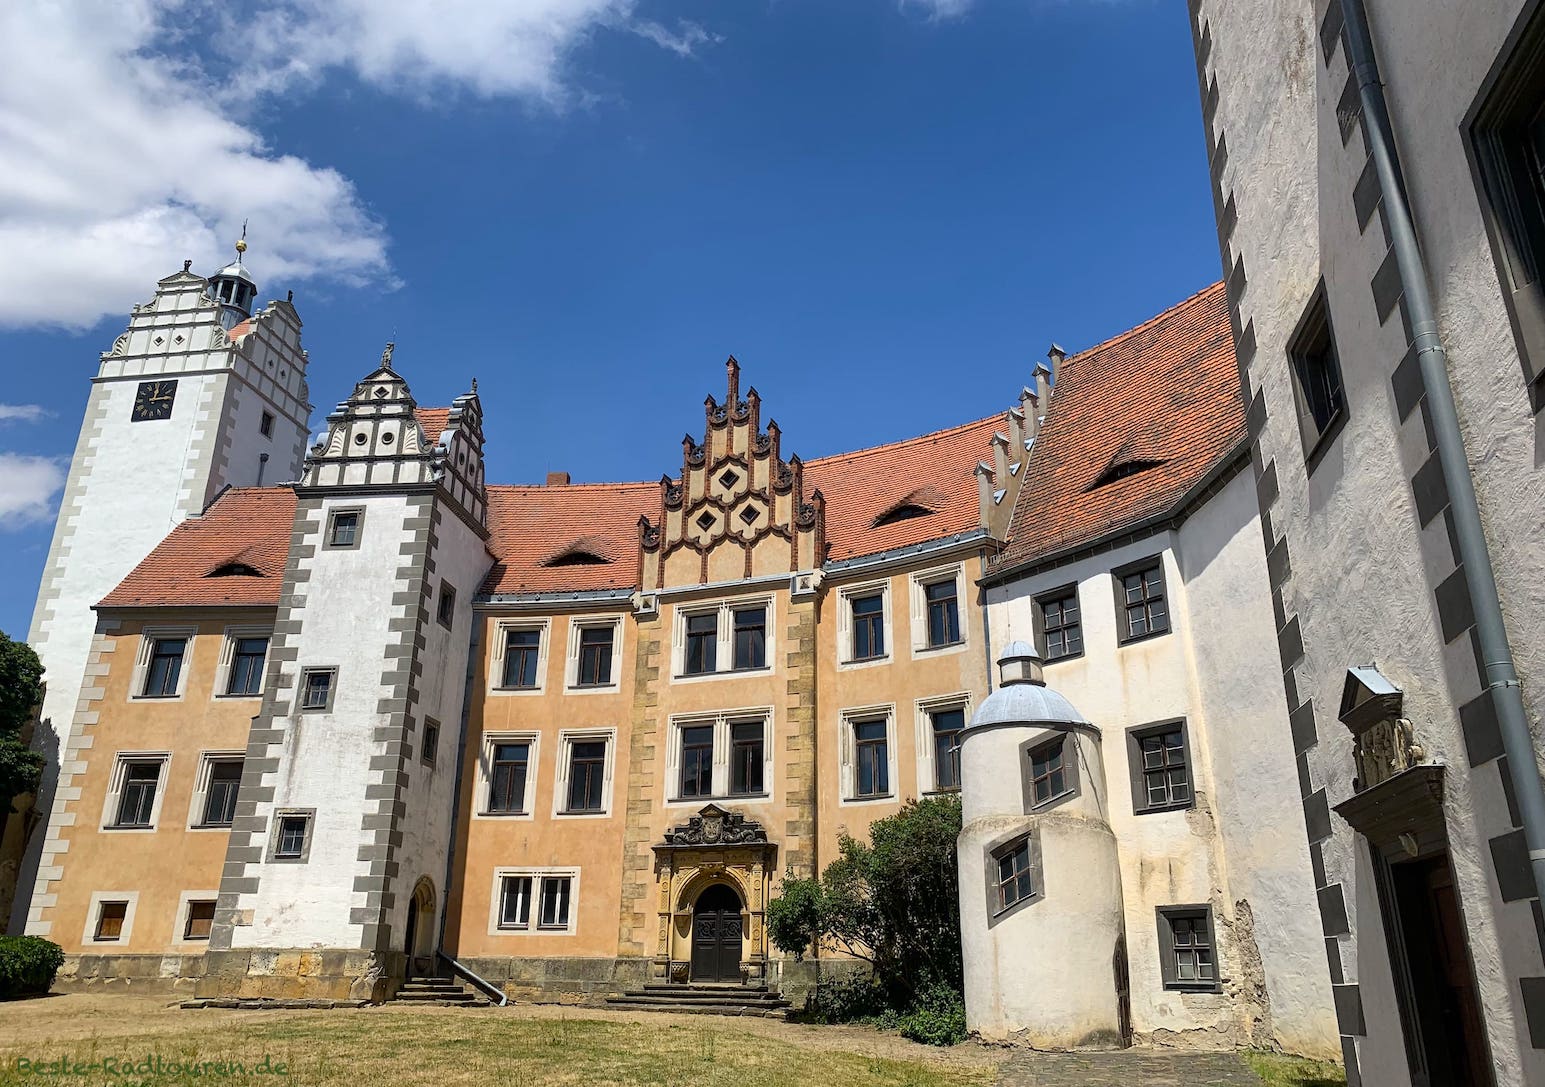 Burg Schloss Strehla, Innenhof mit Turm - Foto von innen